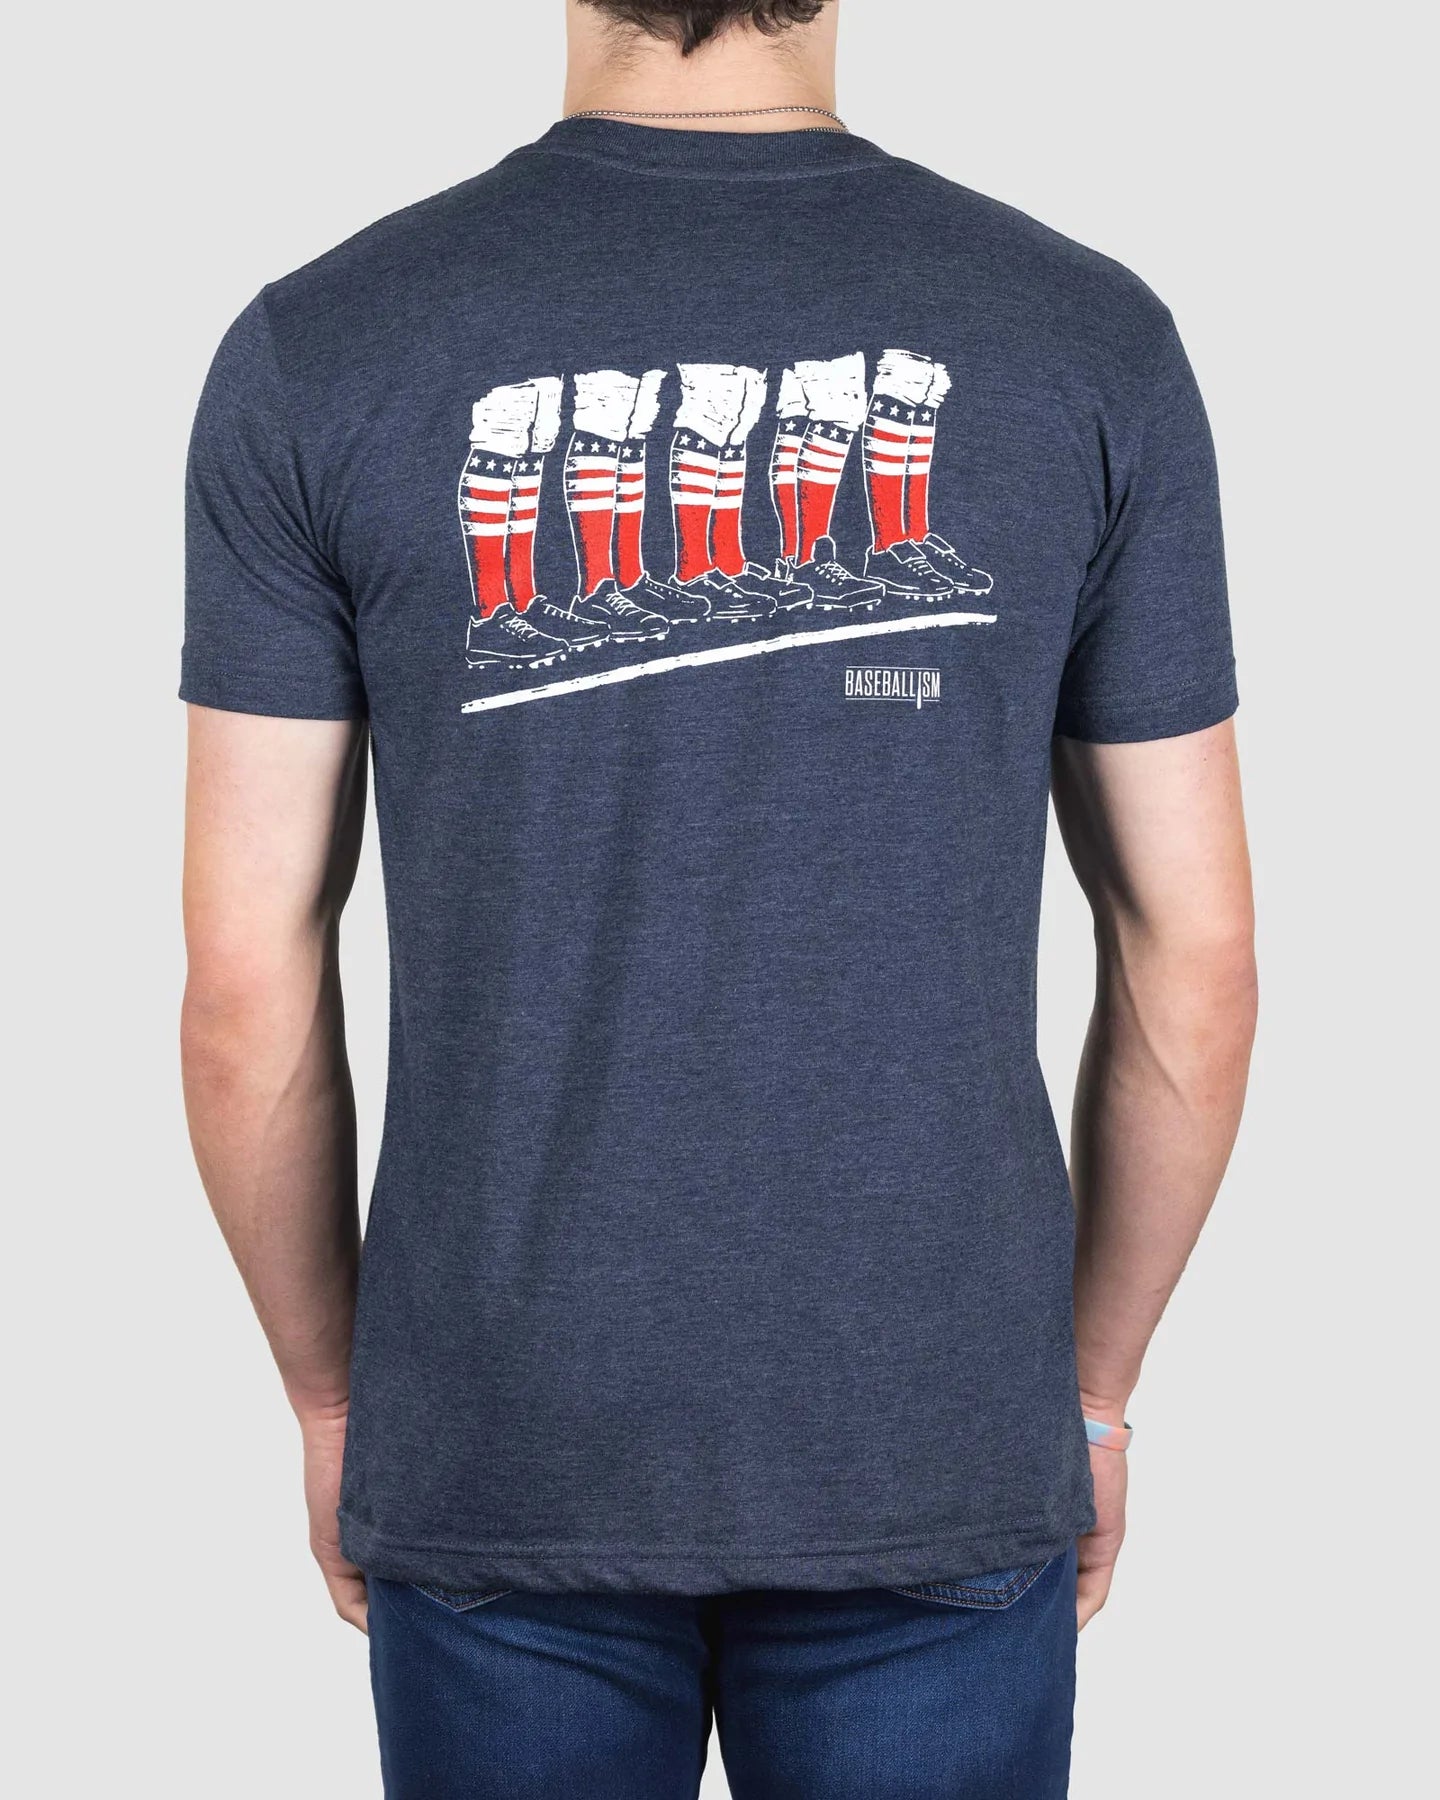 Baseballism Star Spangled Banner Men's T-Shirt